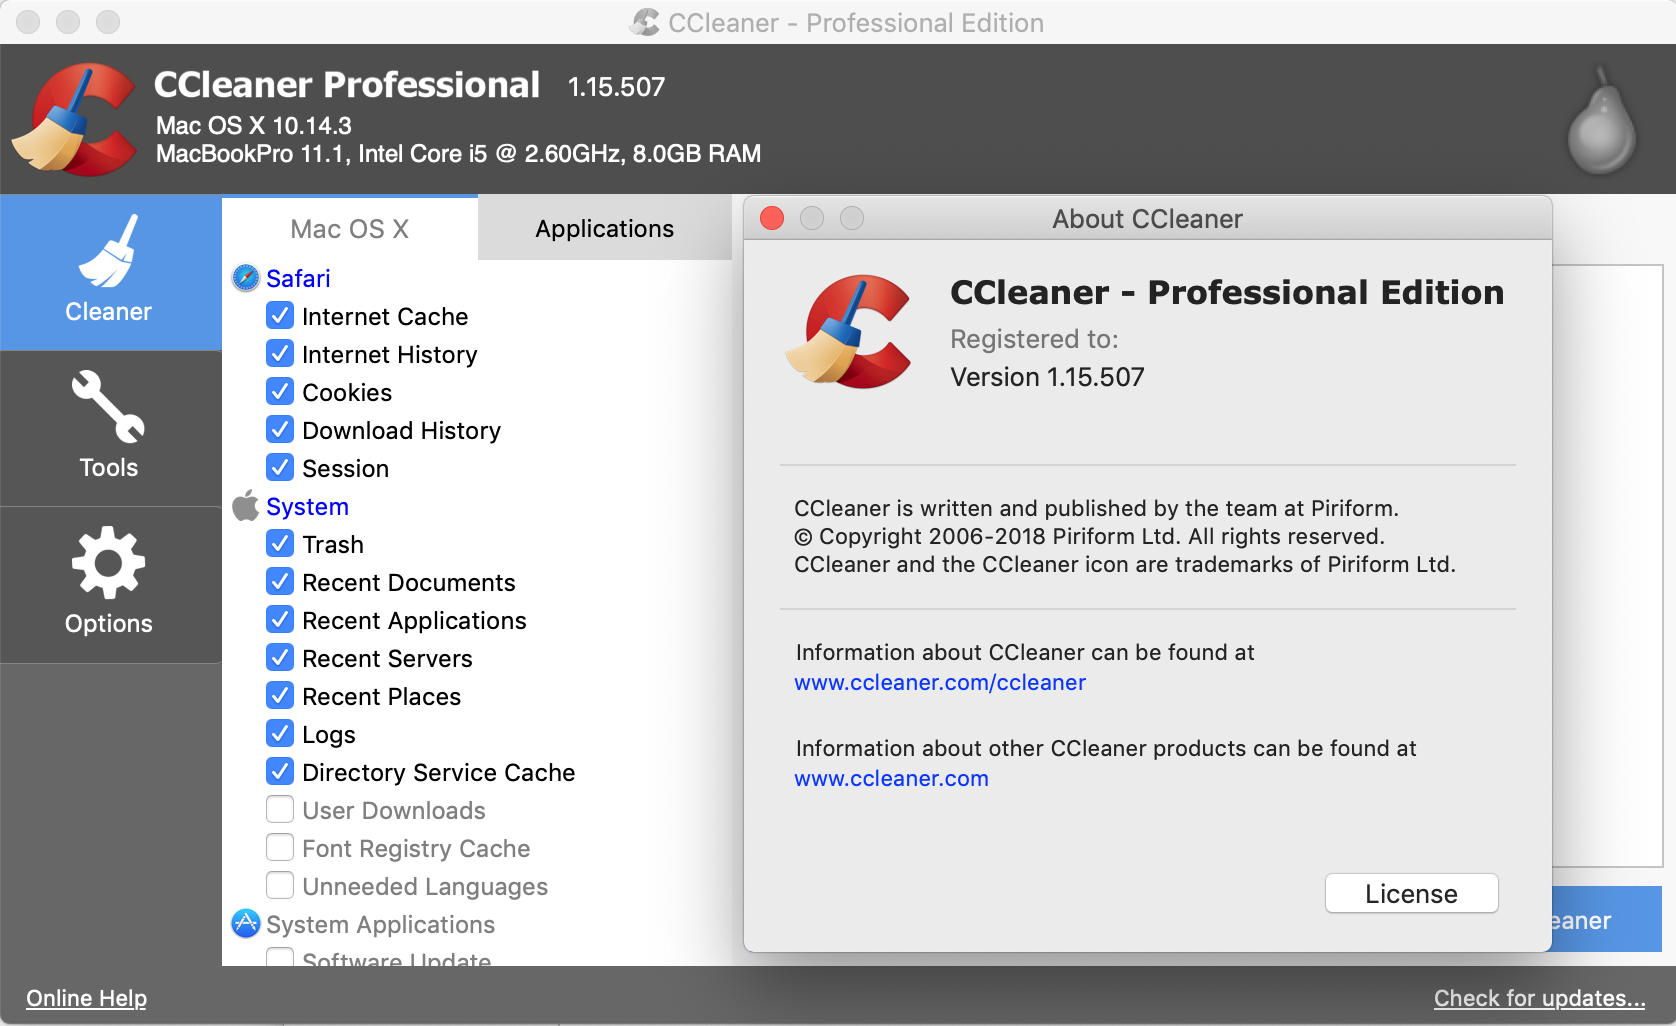 ccleaner macbook pro download